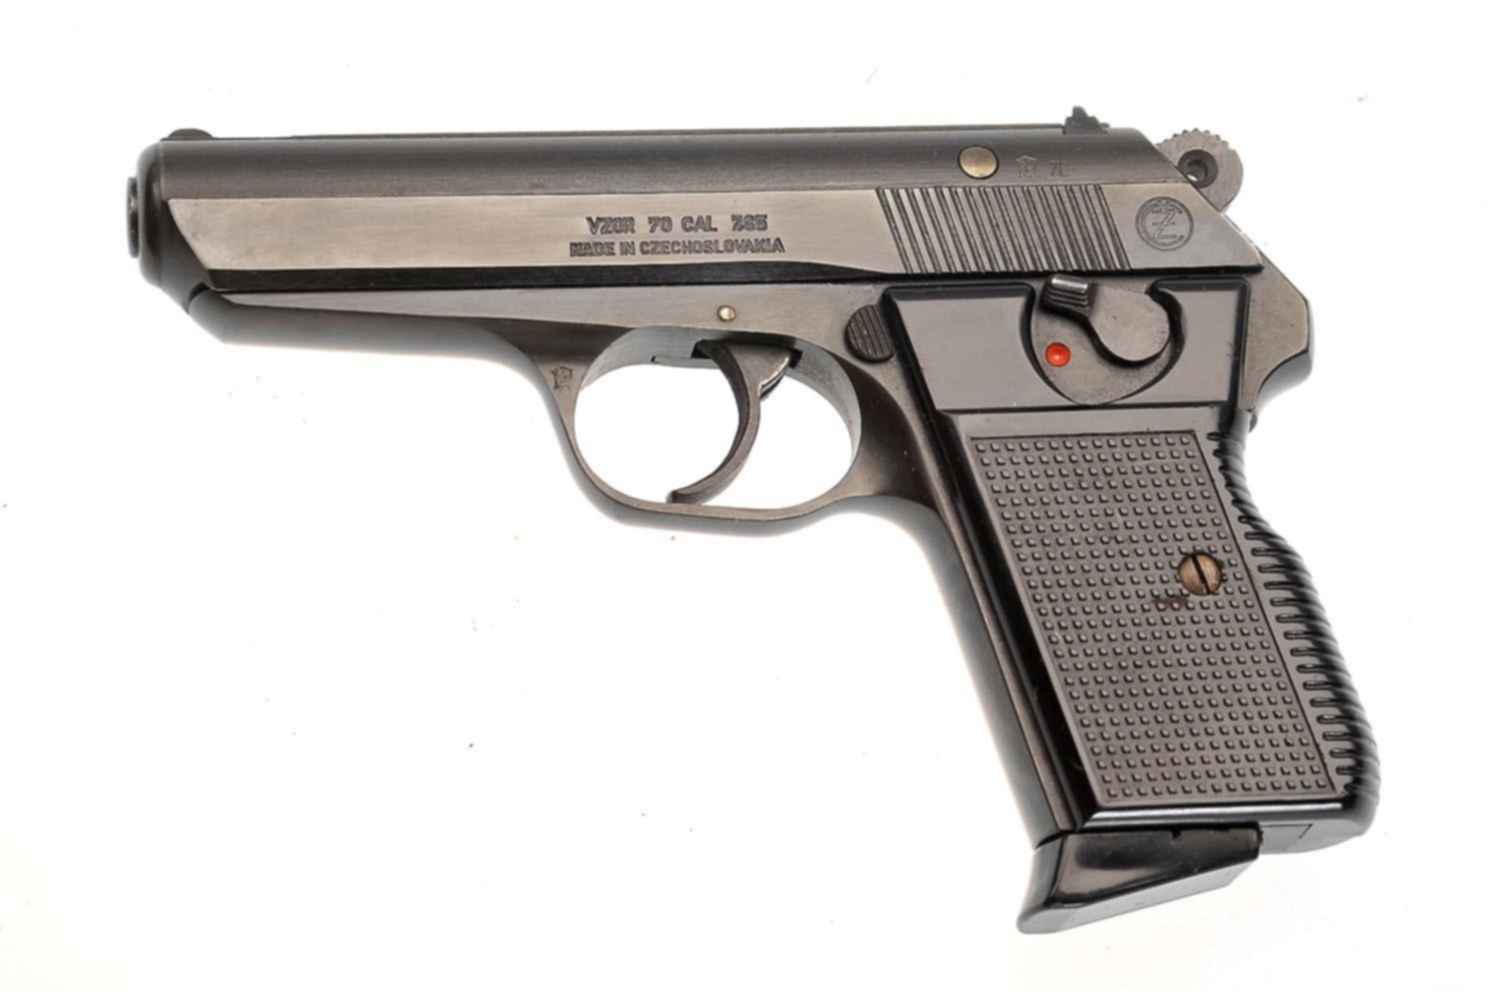 Продам макет чешского пистолета VZOR 70 cal 7.65 макет в отличном состоянии...